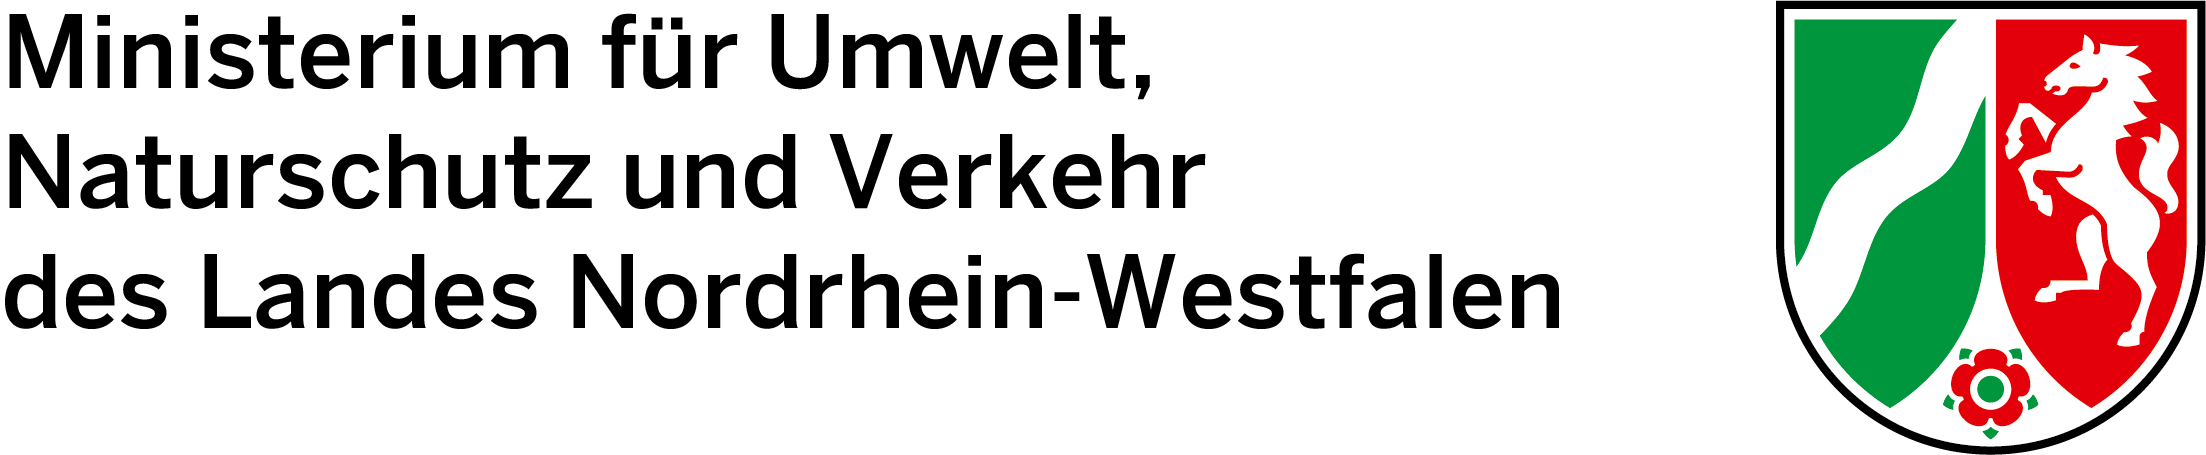 Logo Umweltministerium NRW